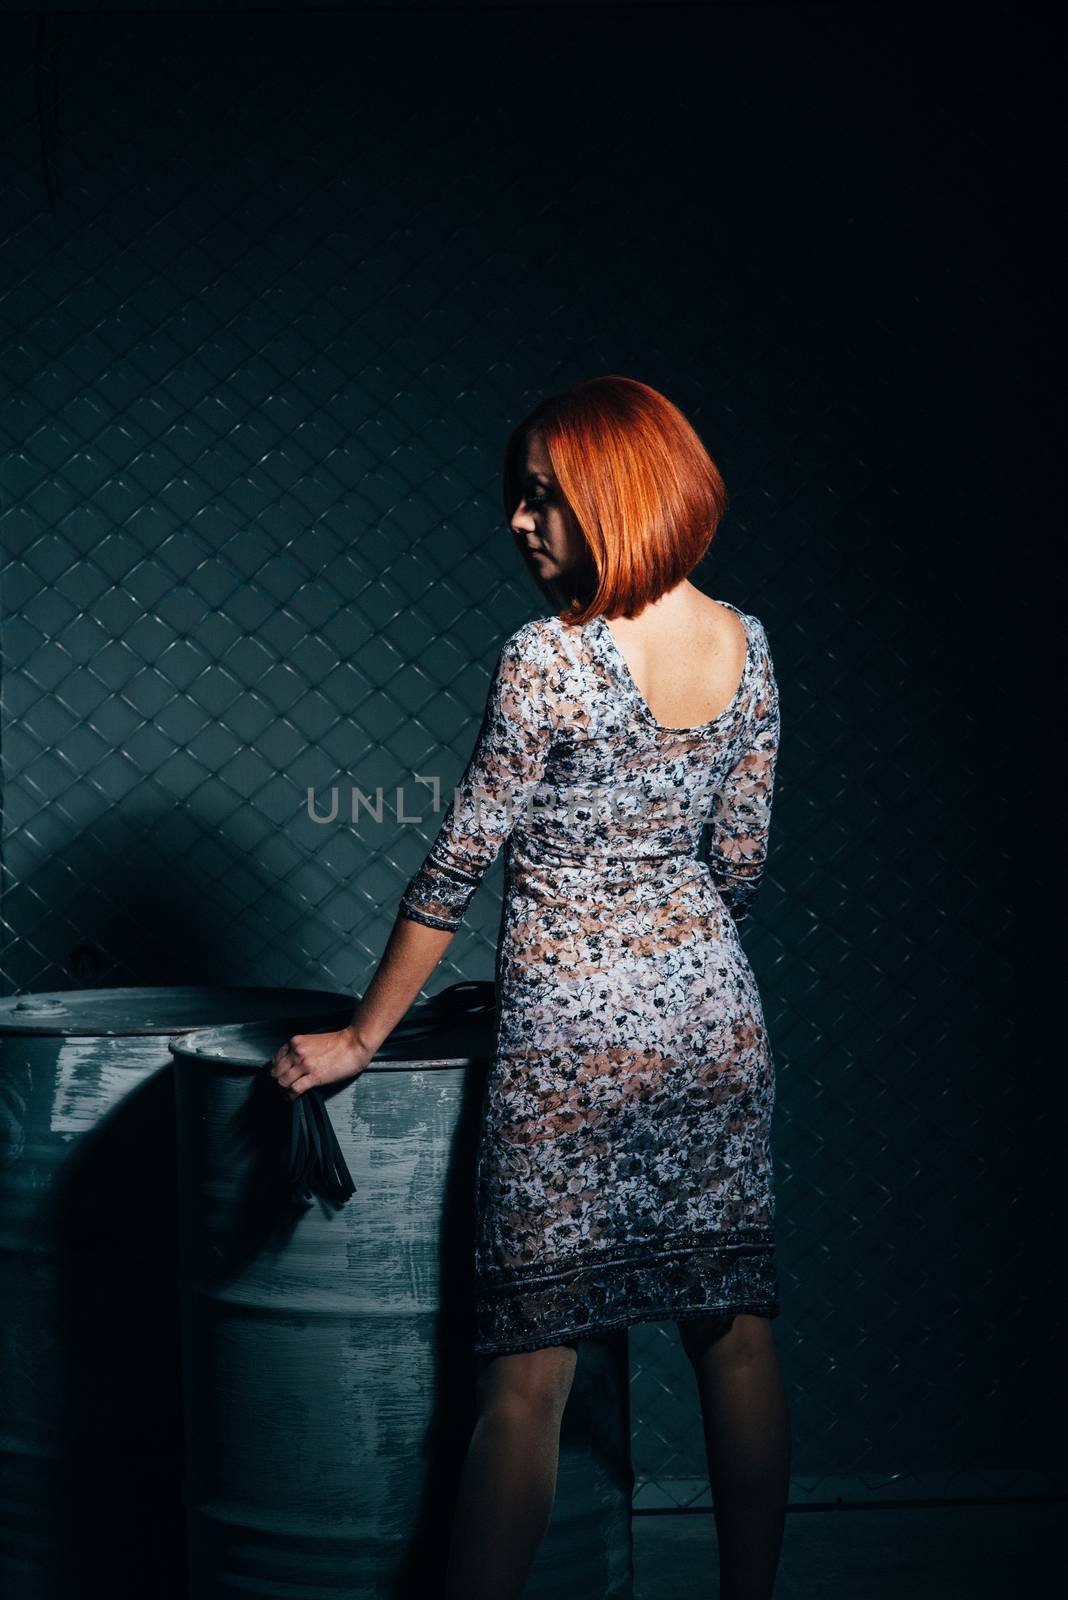 redheaded model girl in a long dress in a dark industrial Studio near barrels of oil